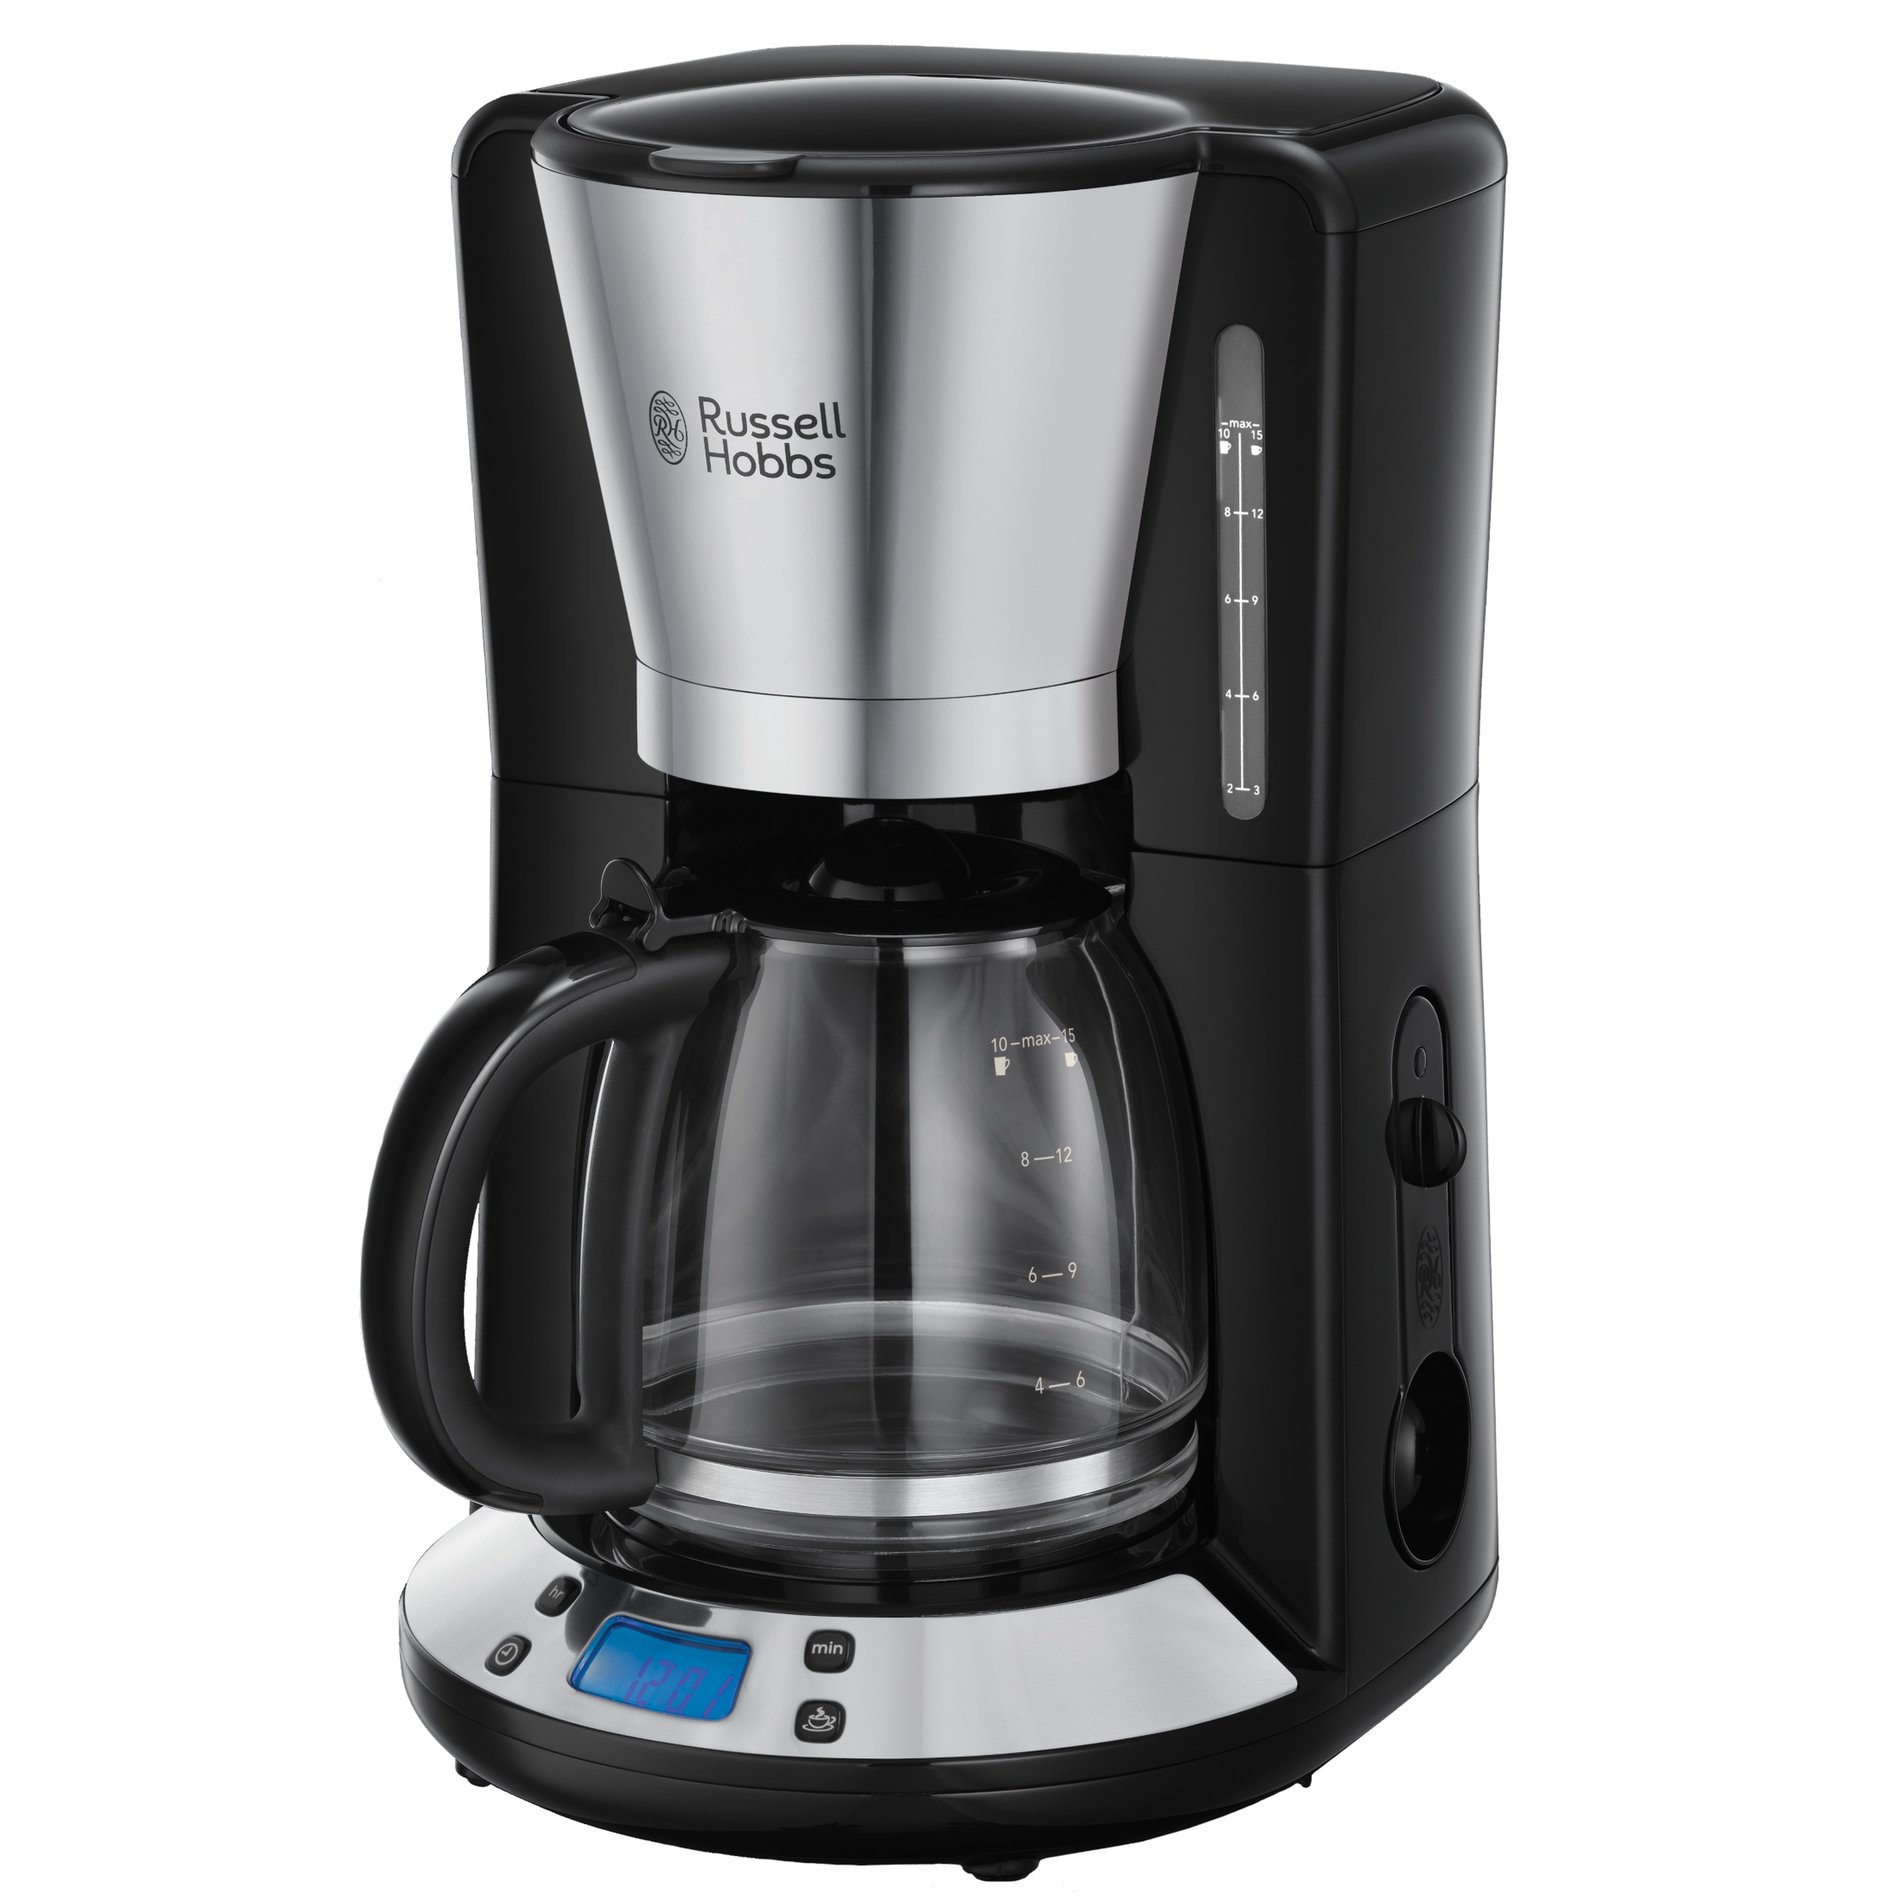 RUSSELL HOBBS Victory Coffee Maker 1100 W černý – elektrický překapávač kávy